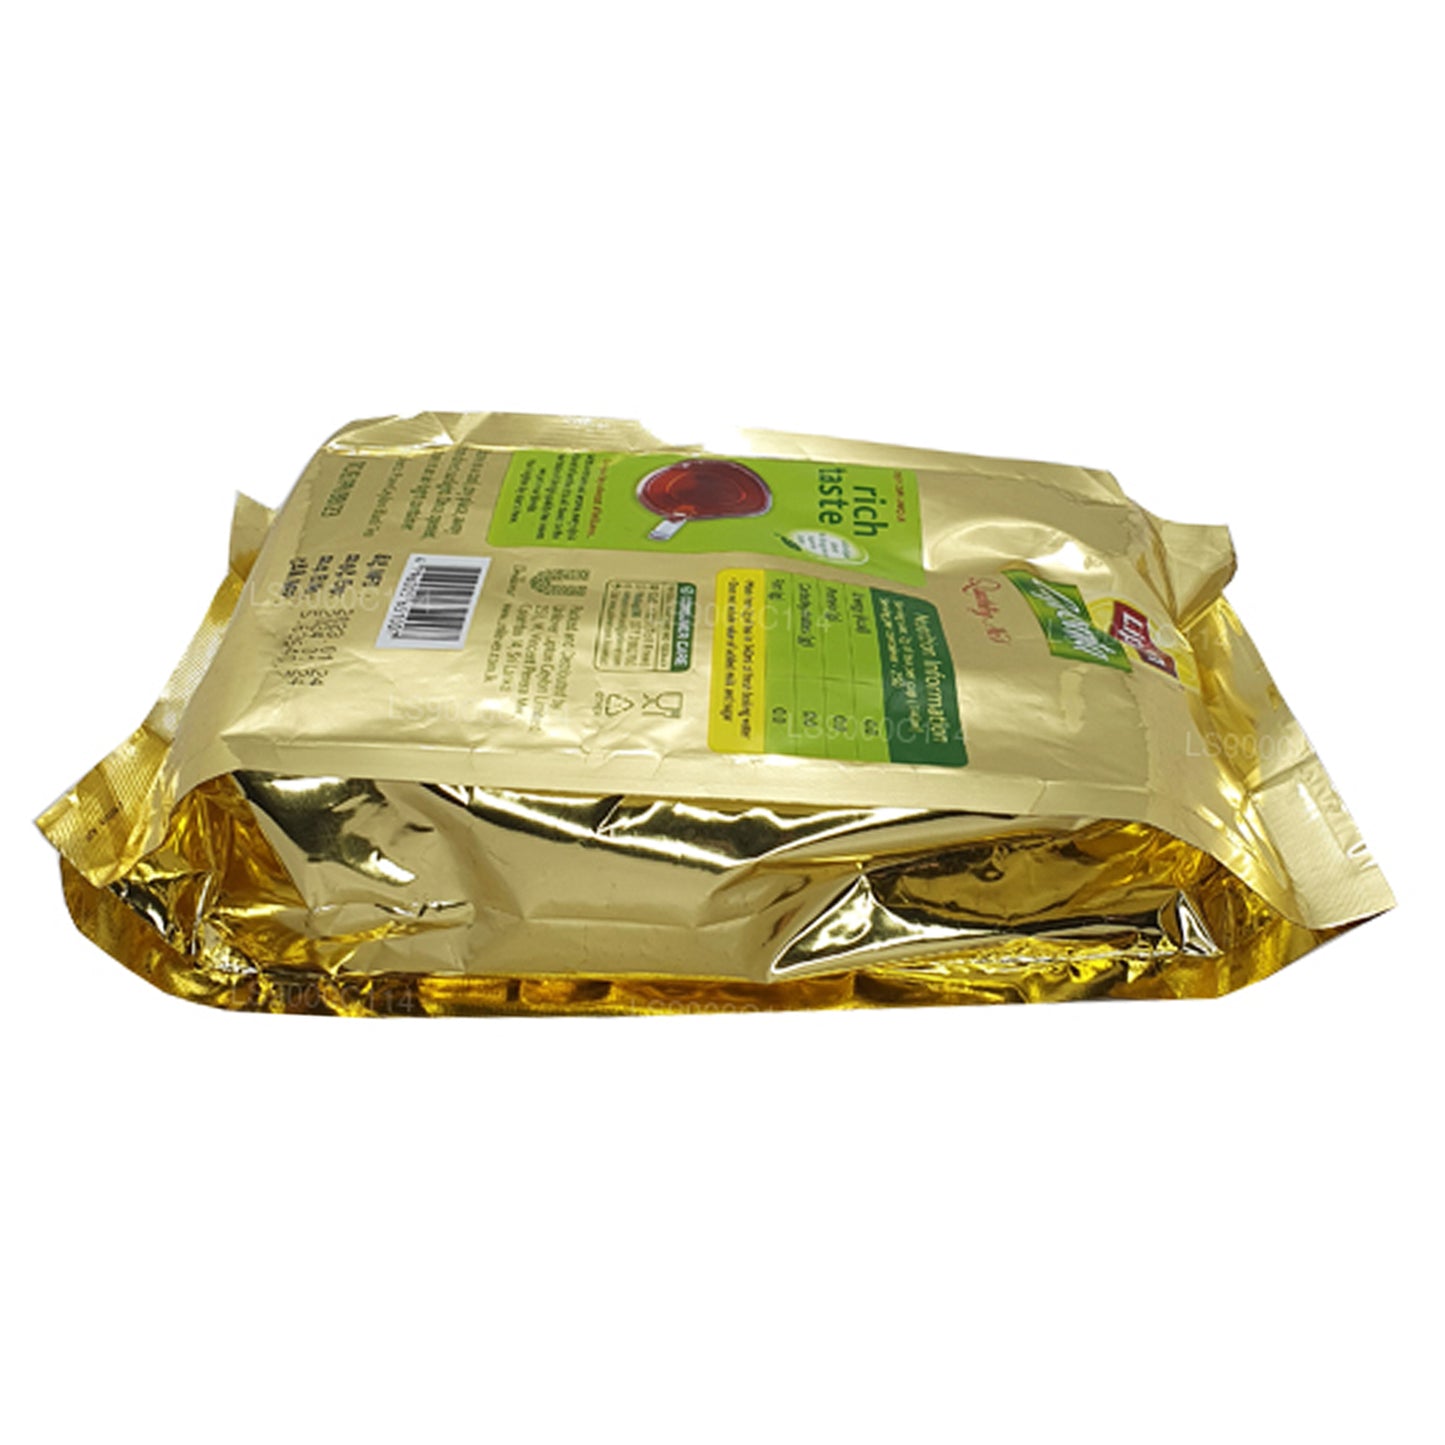 Foglie di tè Lipton Ceylonta (500g)